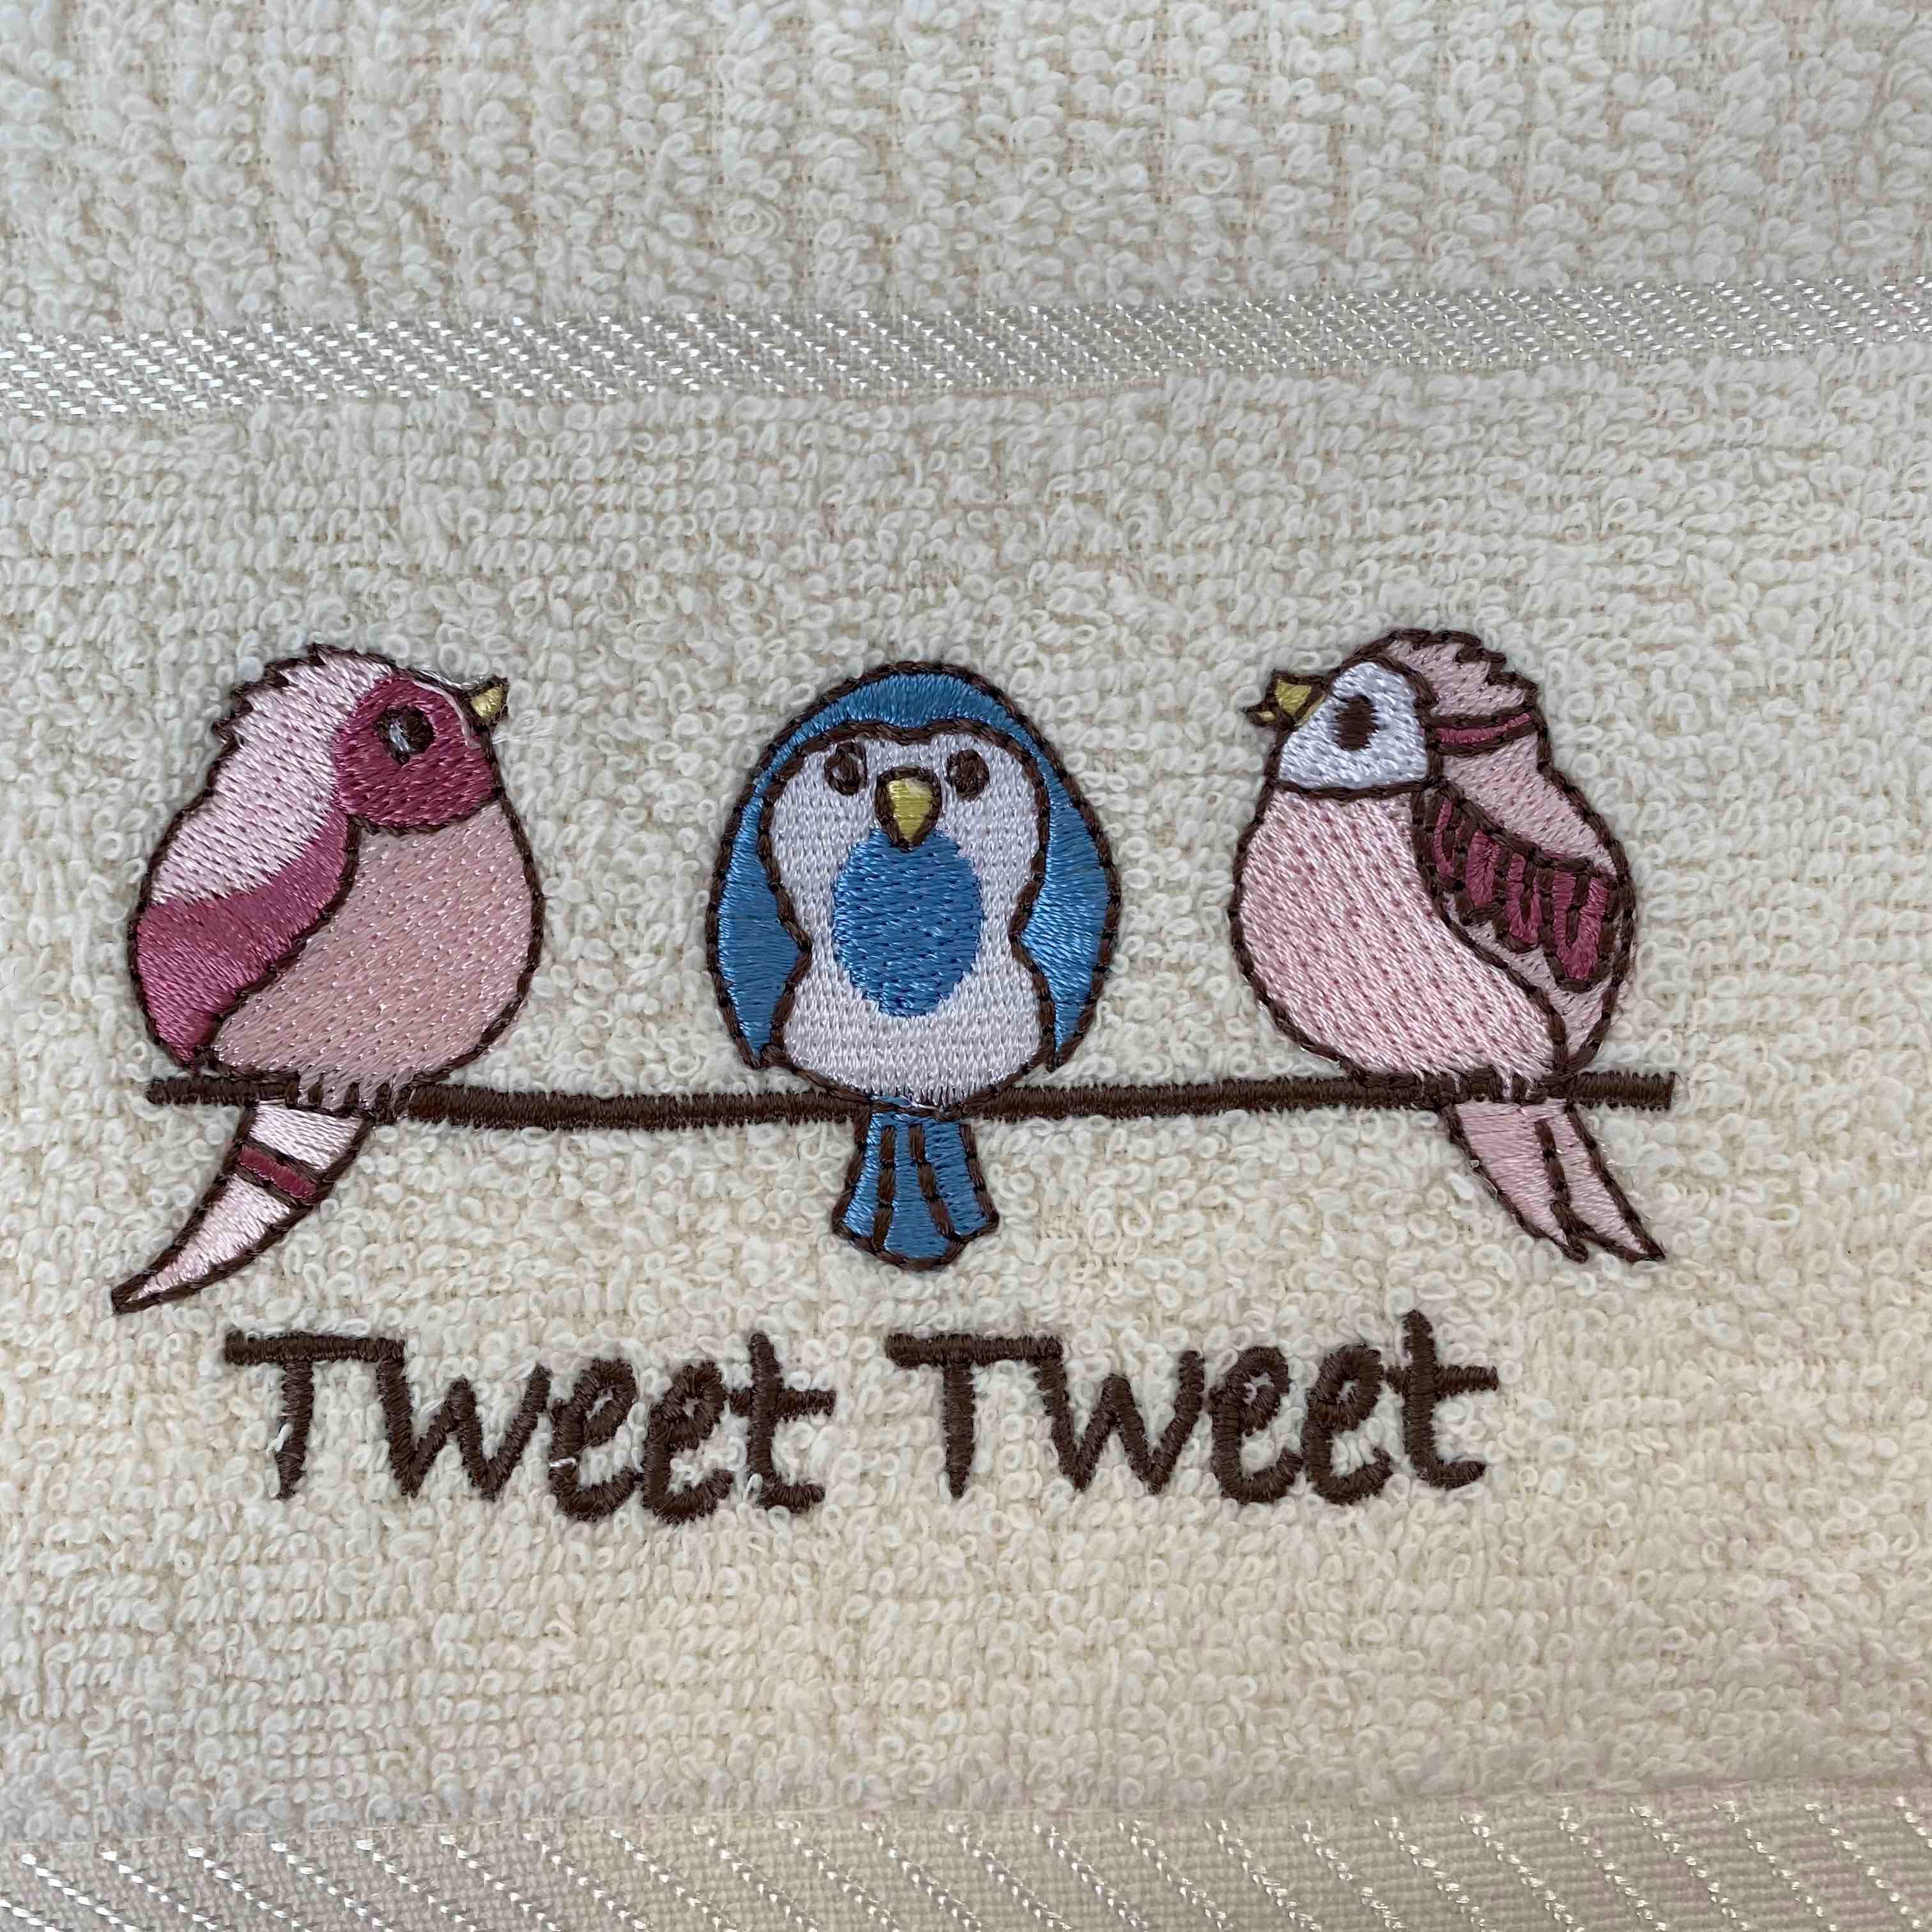 Tweet Tweet Birds Kitchen Towel-Williamsons Factory Shop